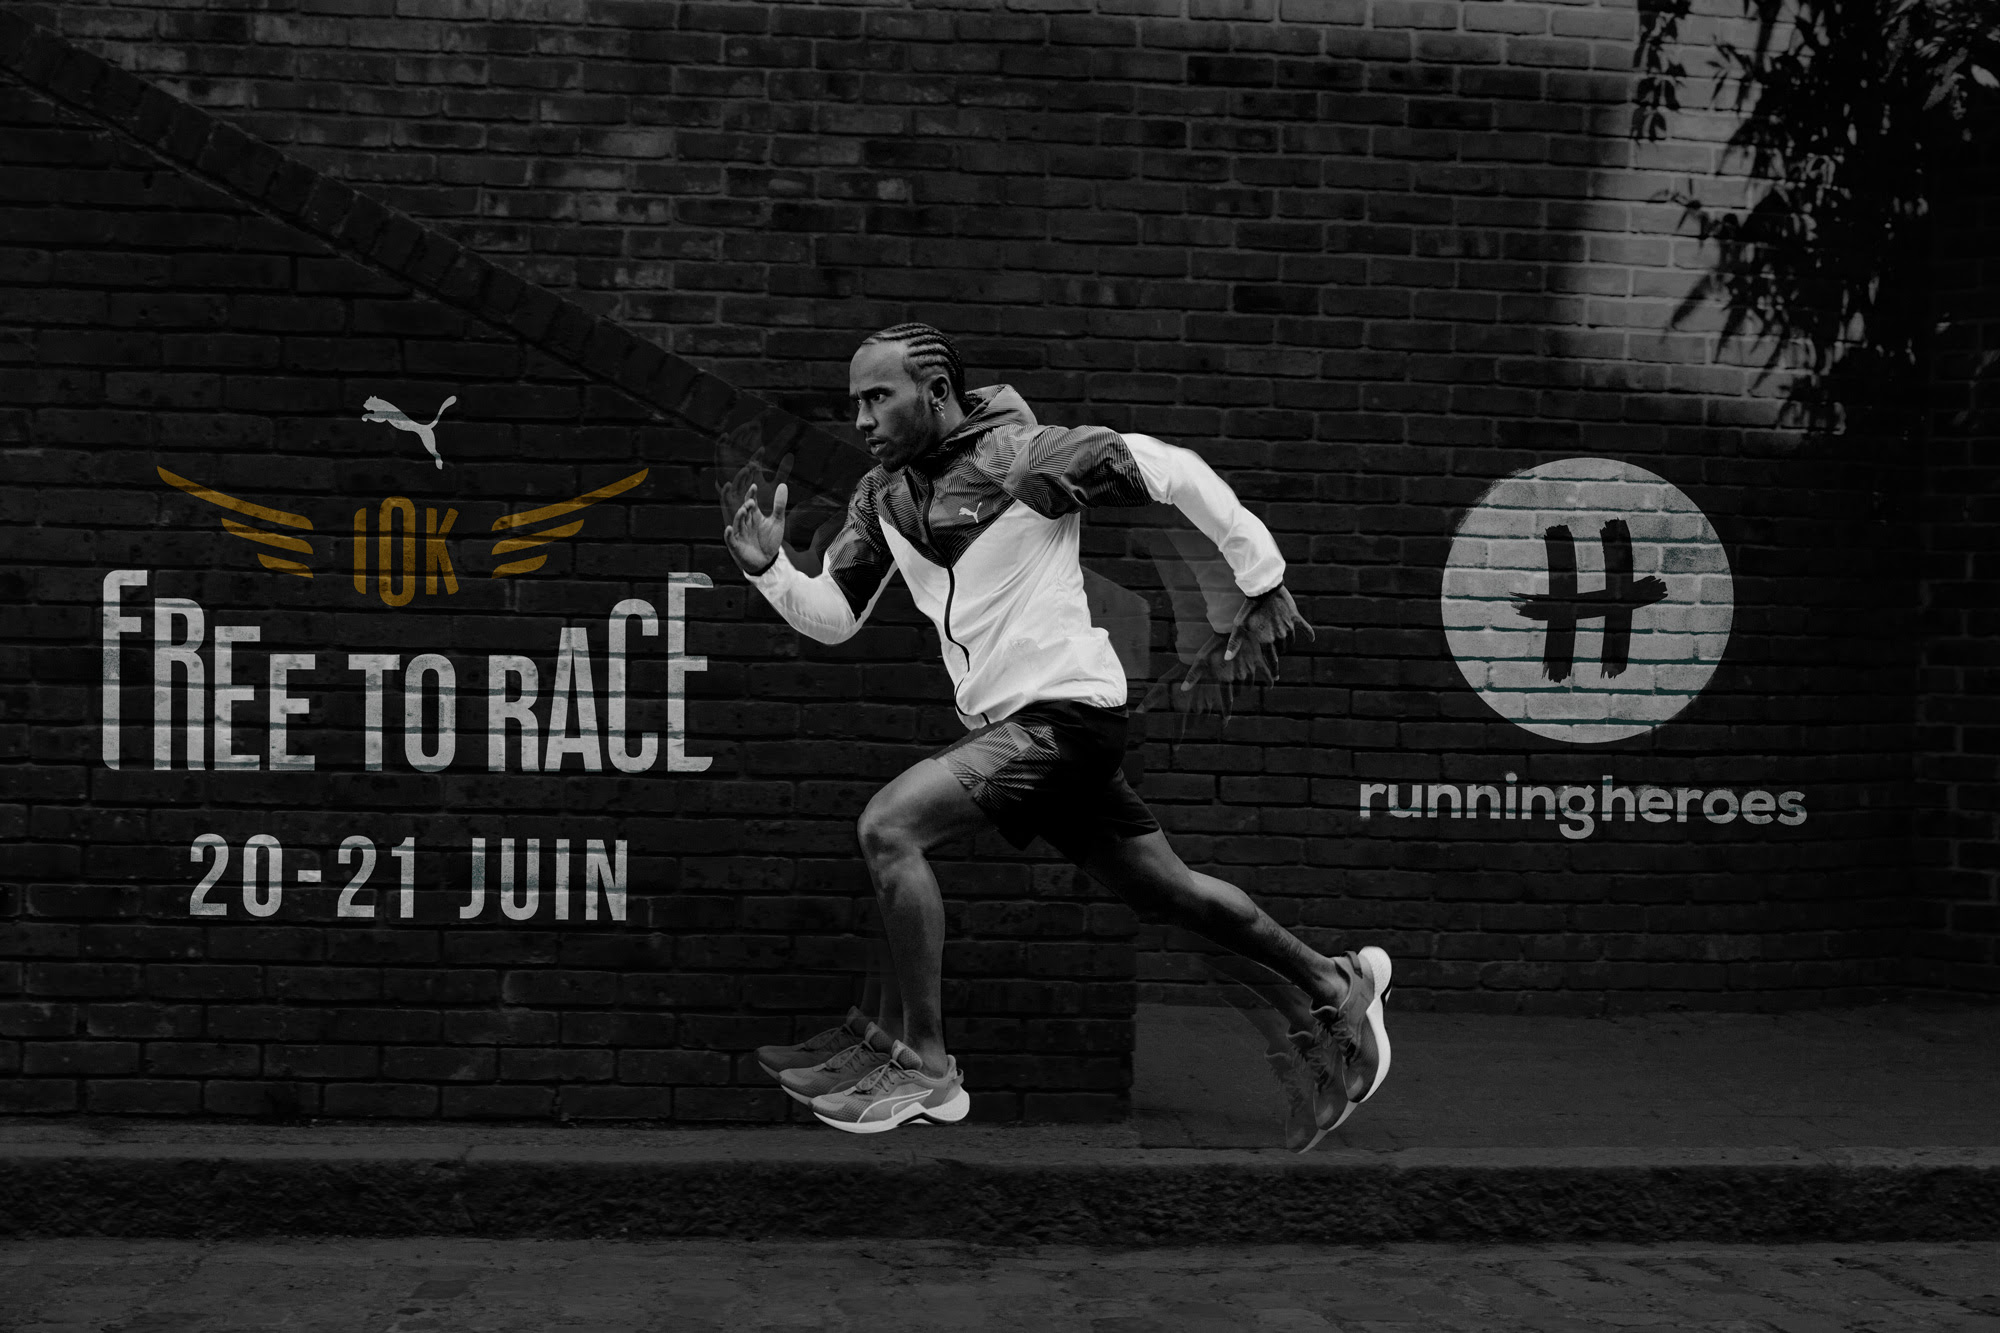 Puma lance un déconfinement original avec les 10K Free To Race en association avec Running Heroes et au profit de l'UNICEF.